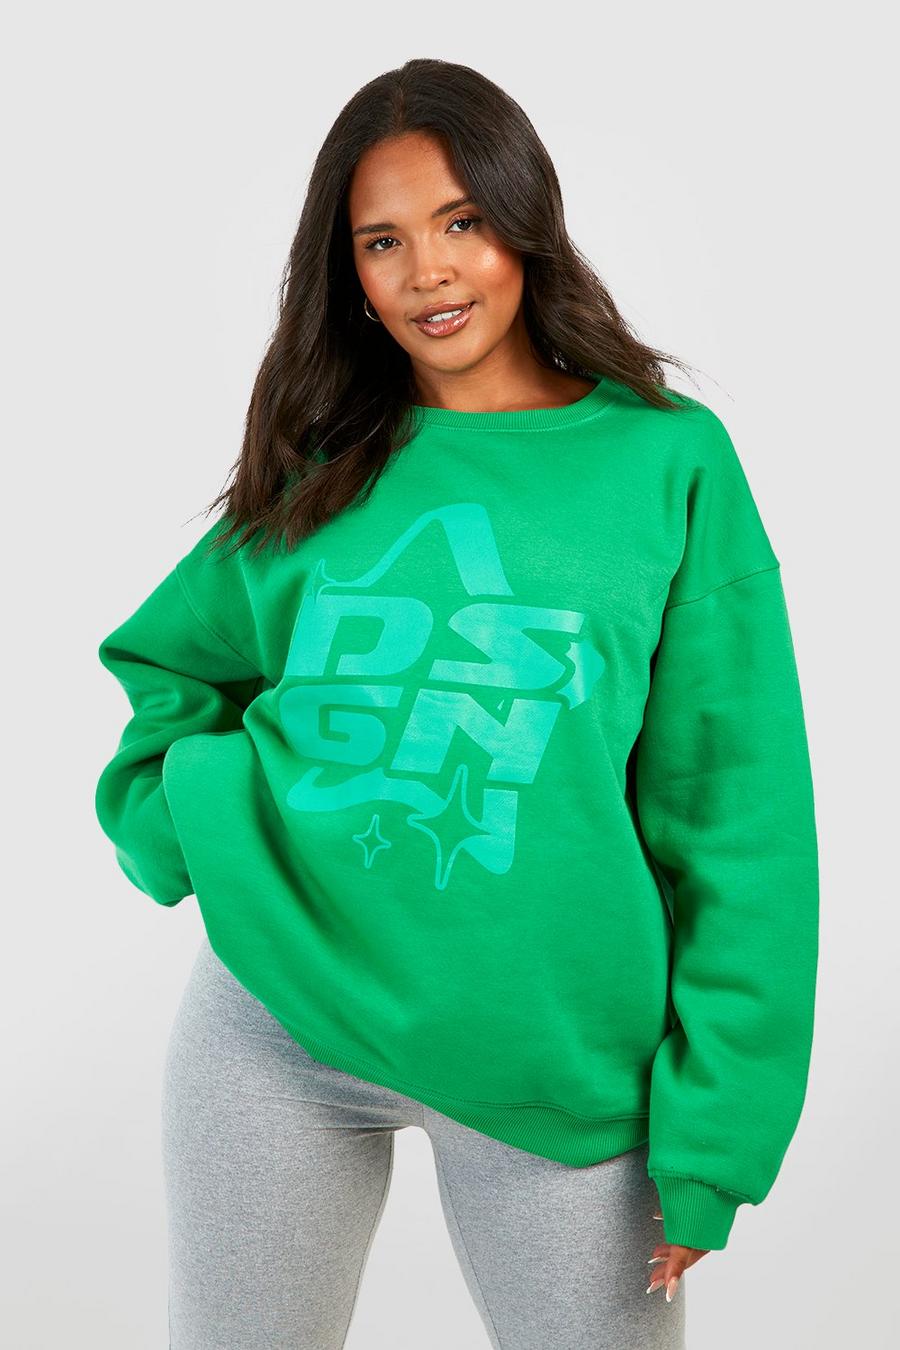 Green Plus Dsgn Studio Slogan Sweatshirt